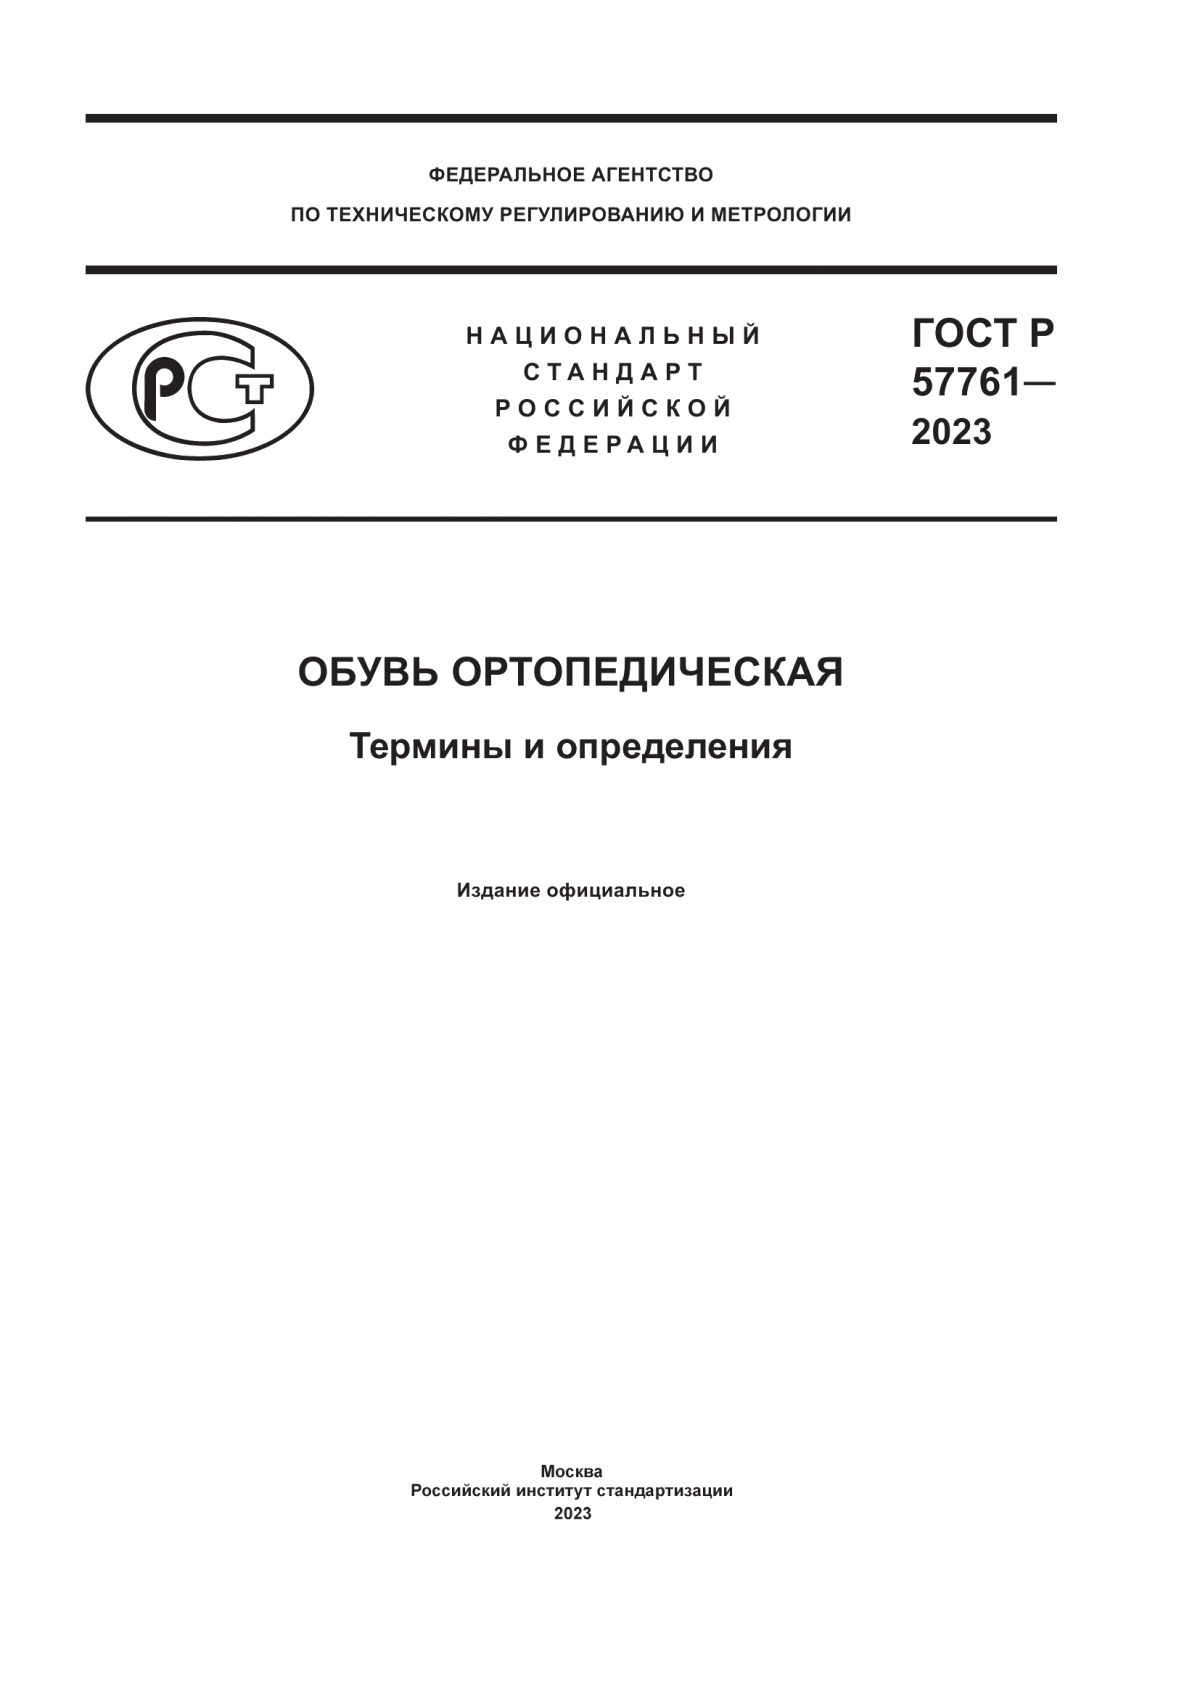 ГОСТ Р 57761-2023 Обувь ортопедическая. Термины и определения